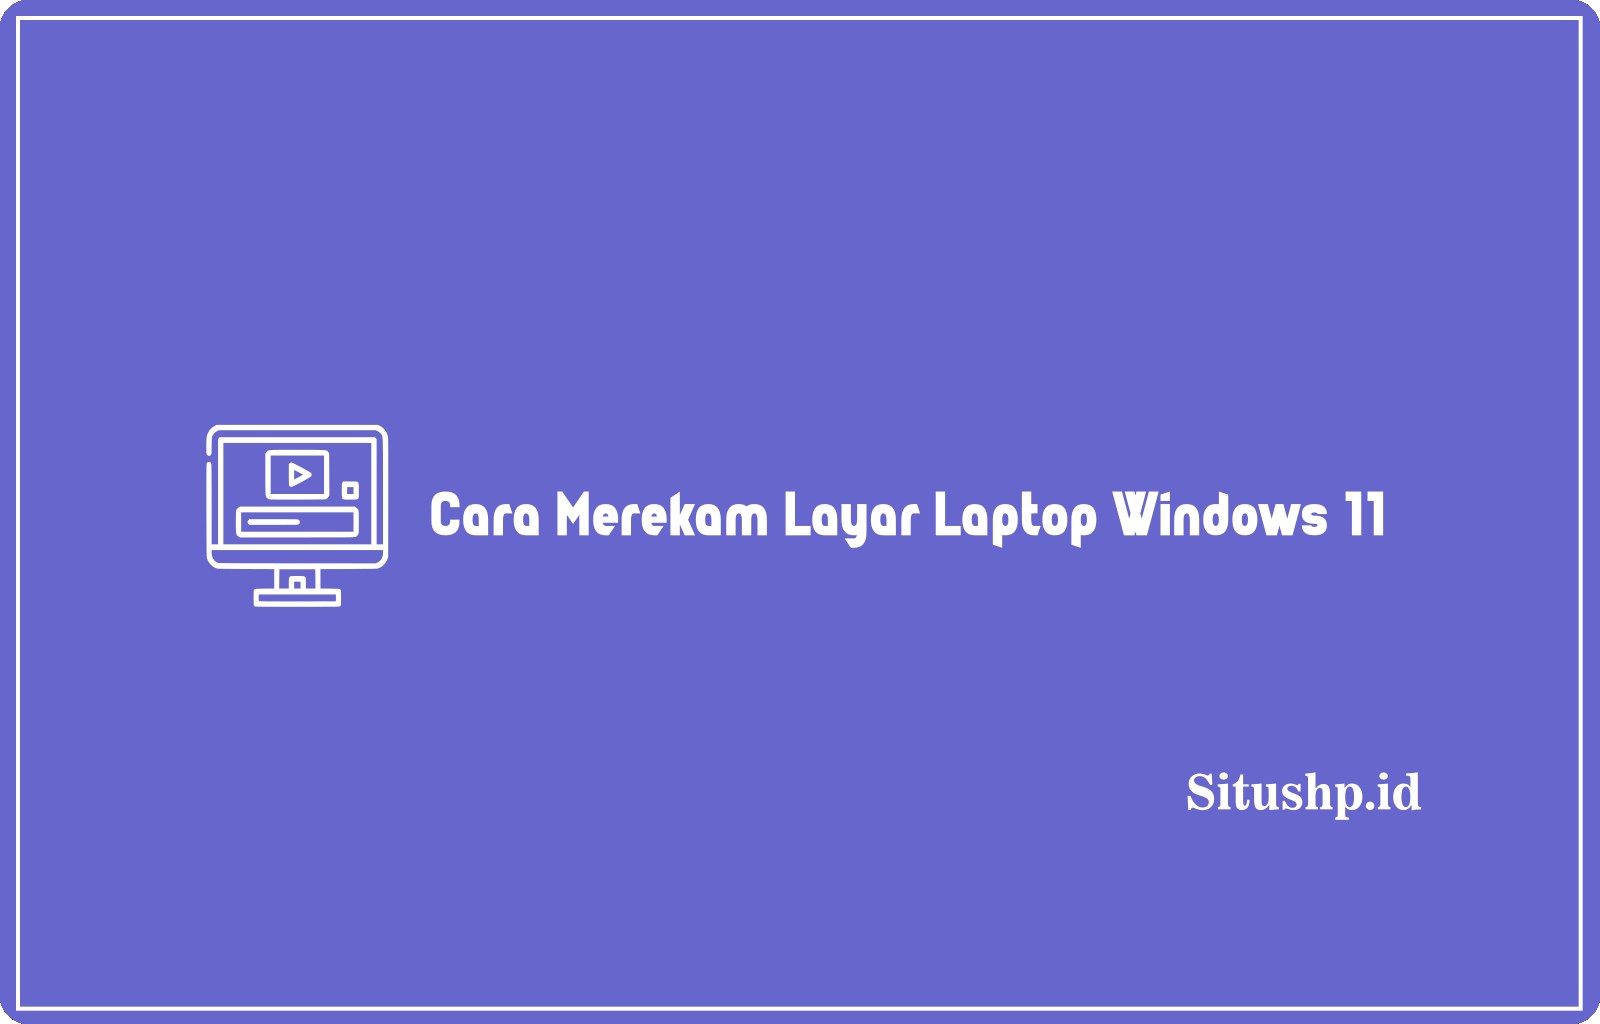 Cara Merekam Layar Laptop Windows 11